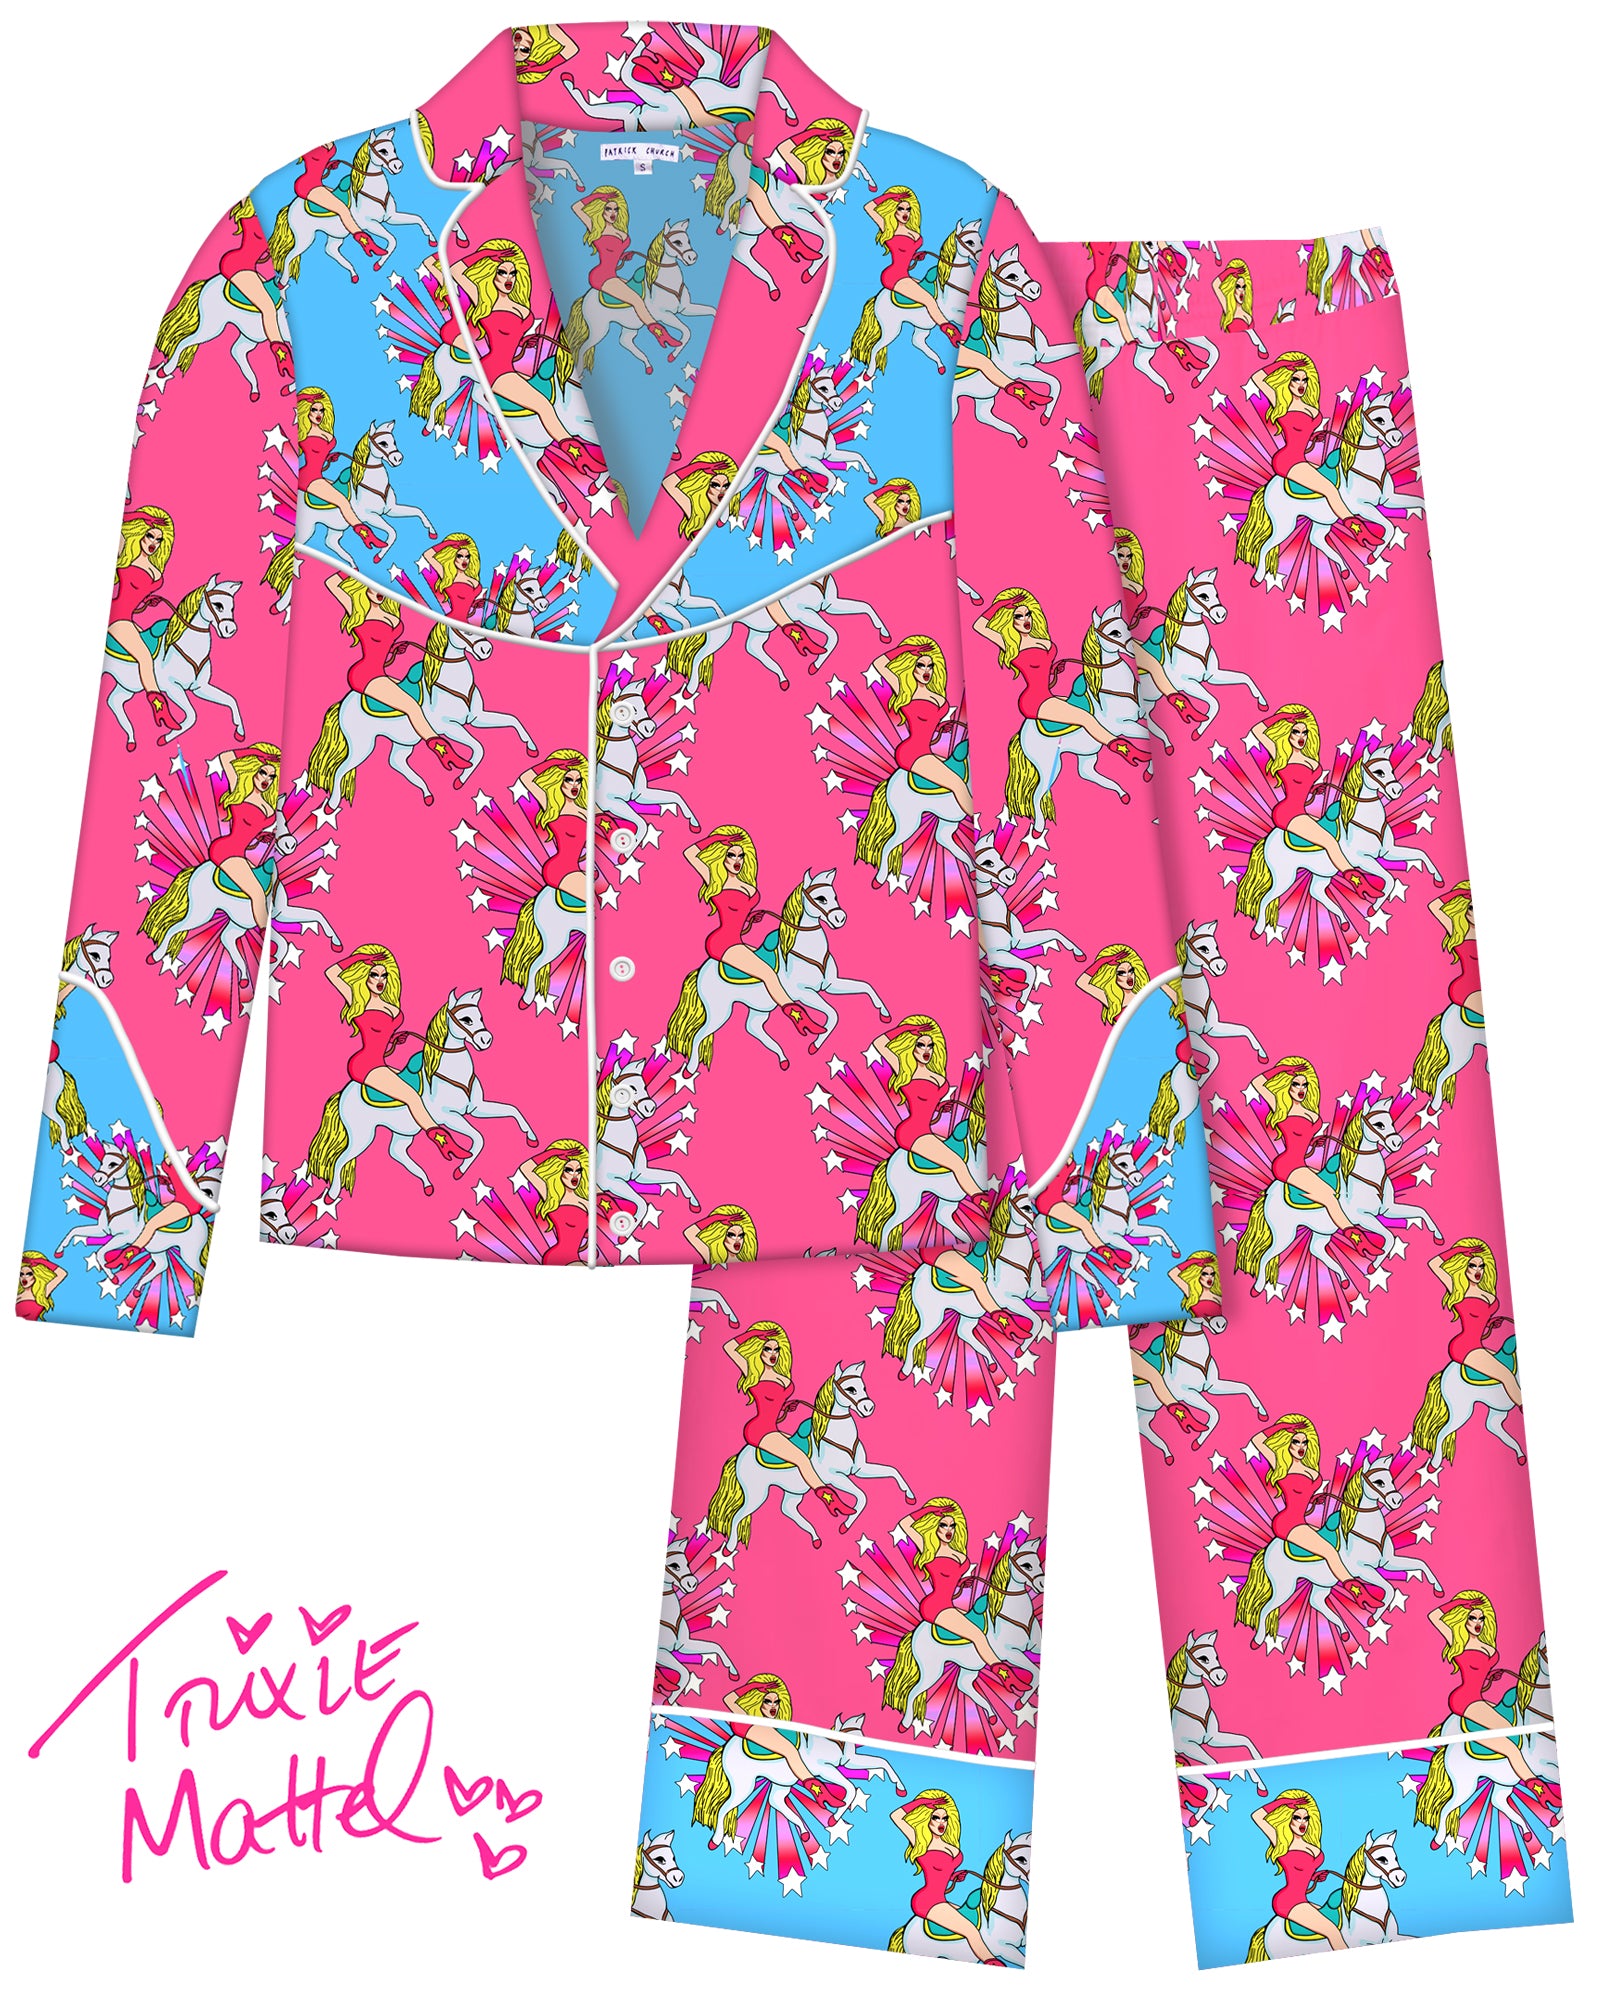 Trixie's Western Pajama Set - Patrick Church